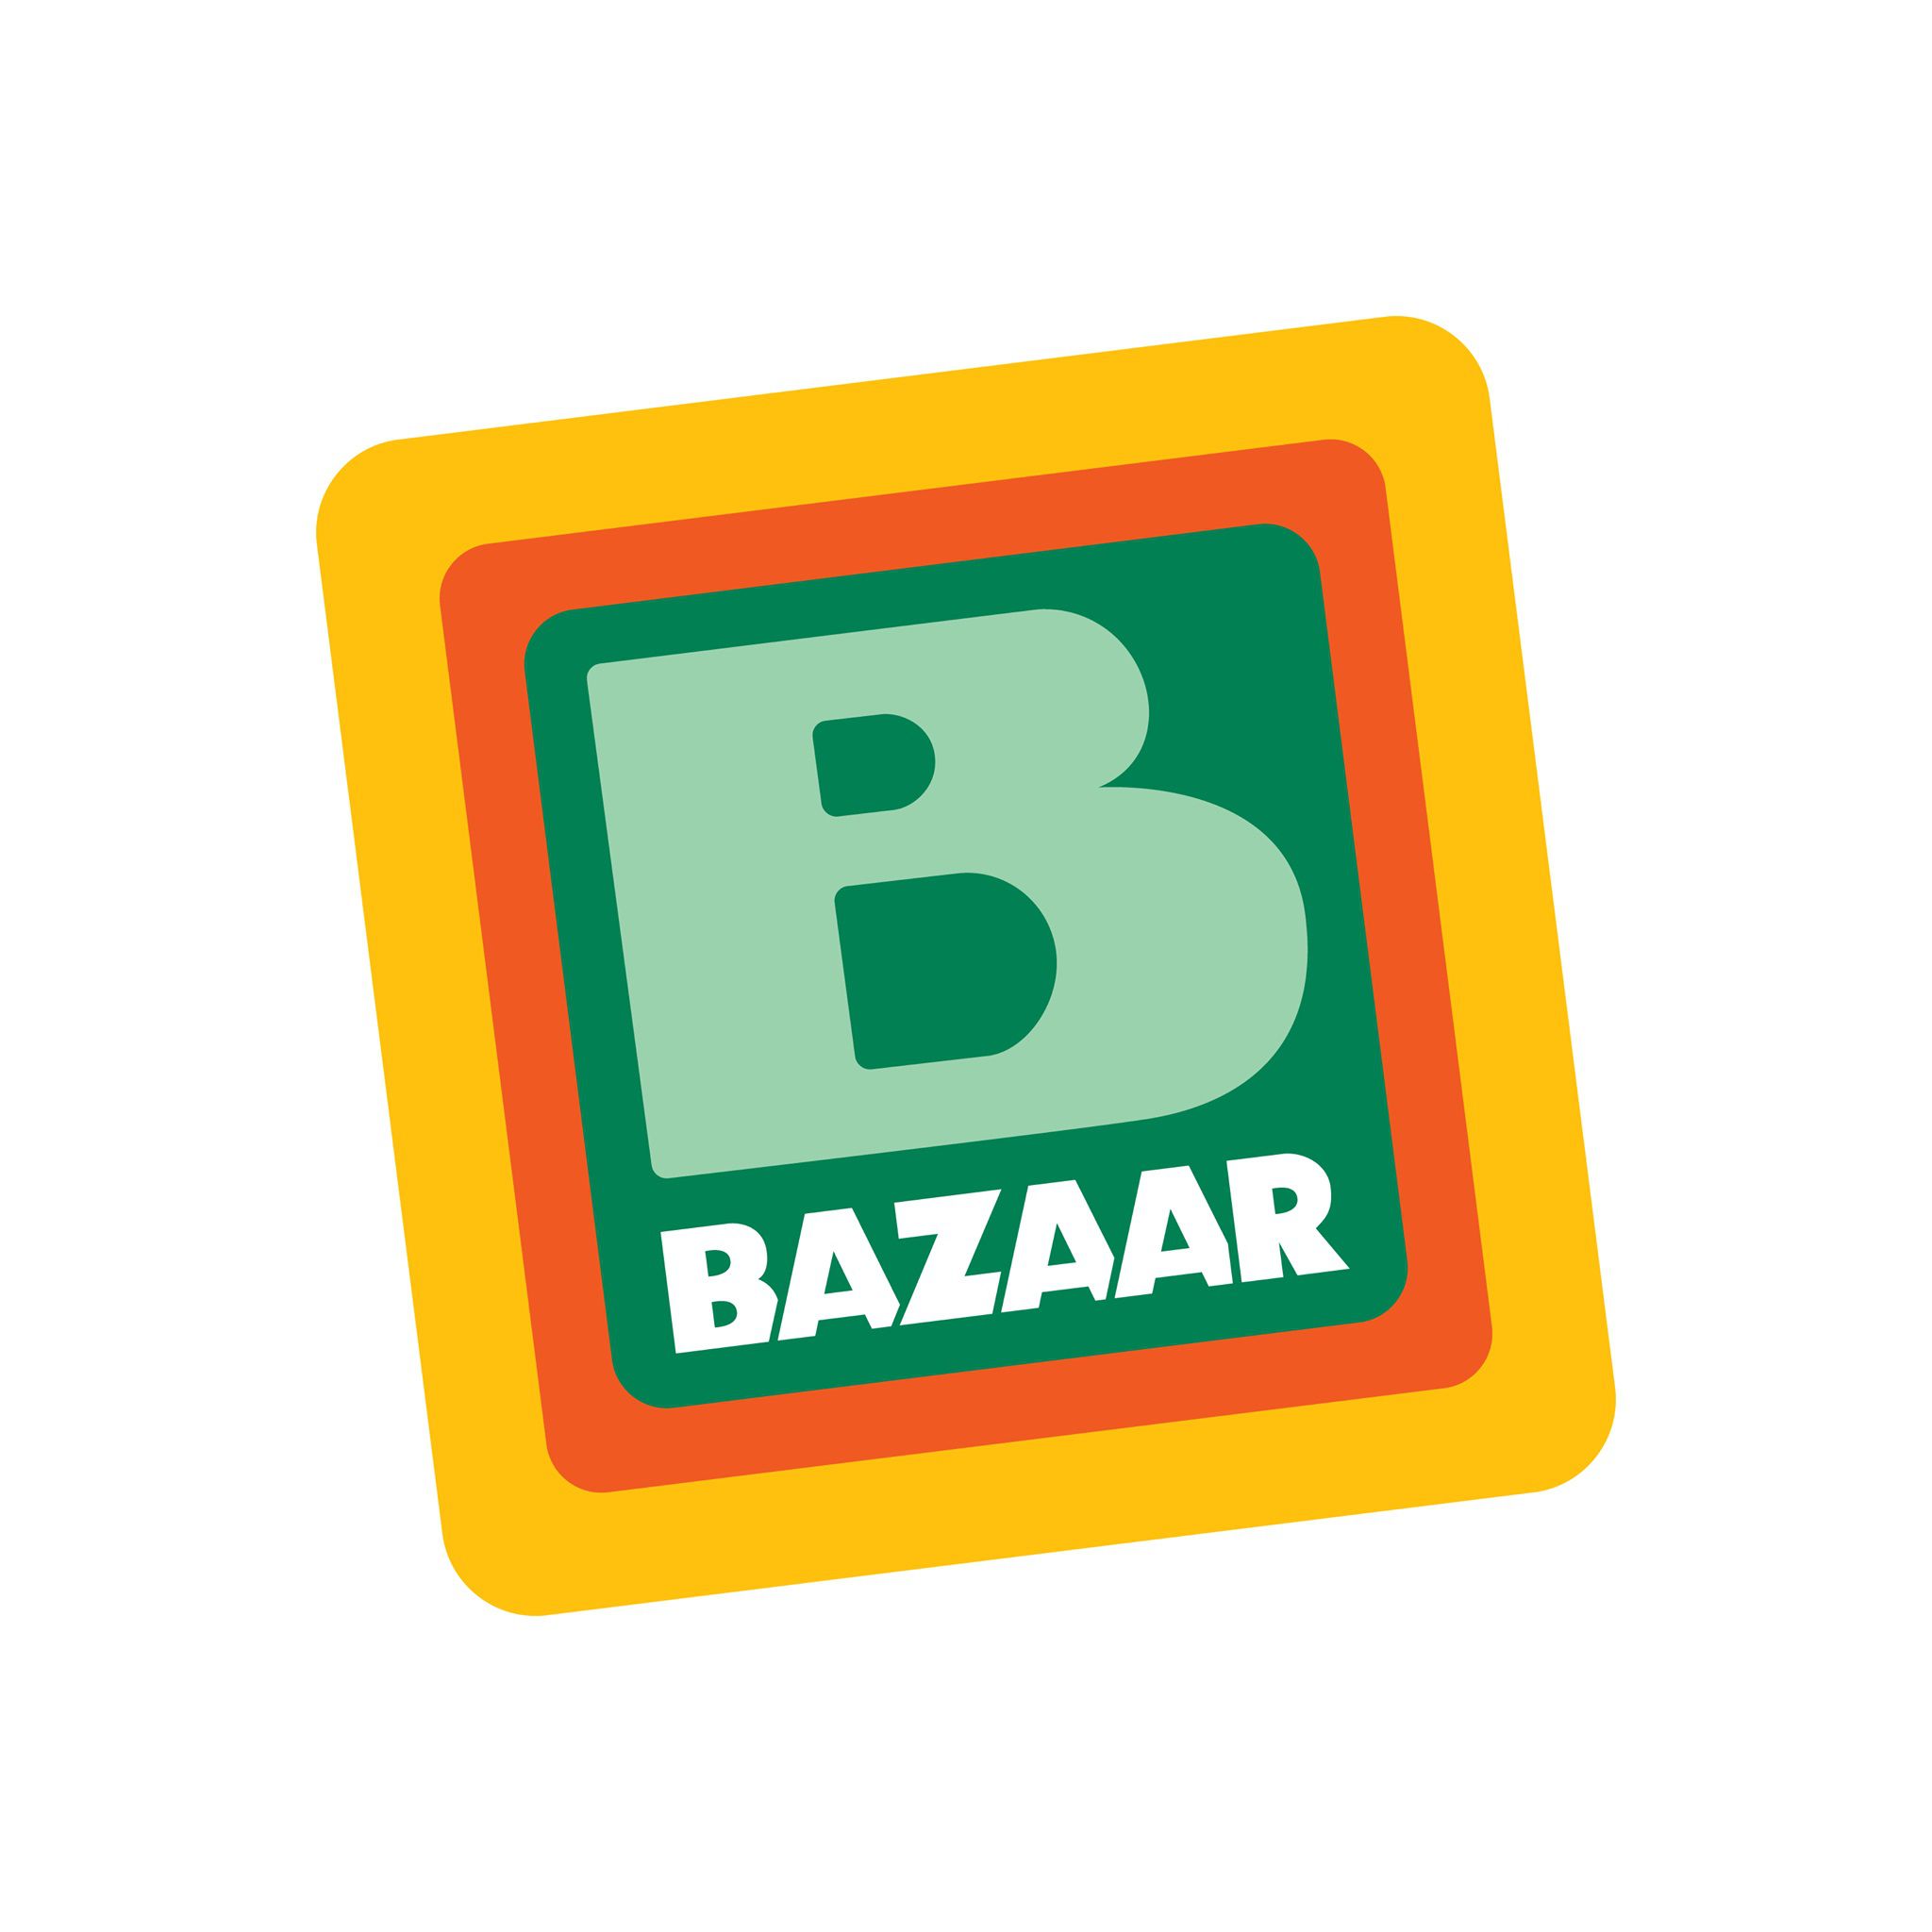 H Bazaar Α.Ε., μέλος του Ομίλου Εταιριών Βερούκα, αναζητεί προσωπικό για τα καταστήματά της στην Κω, Ζηπάρι και Αγία Μαρίνα